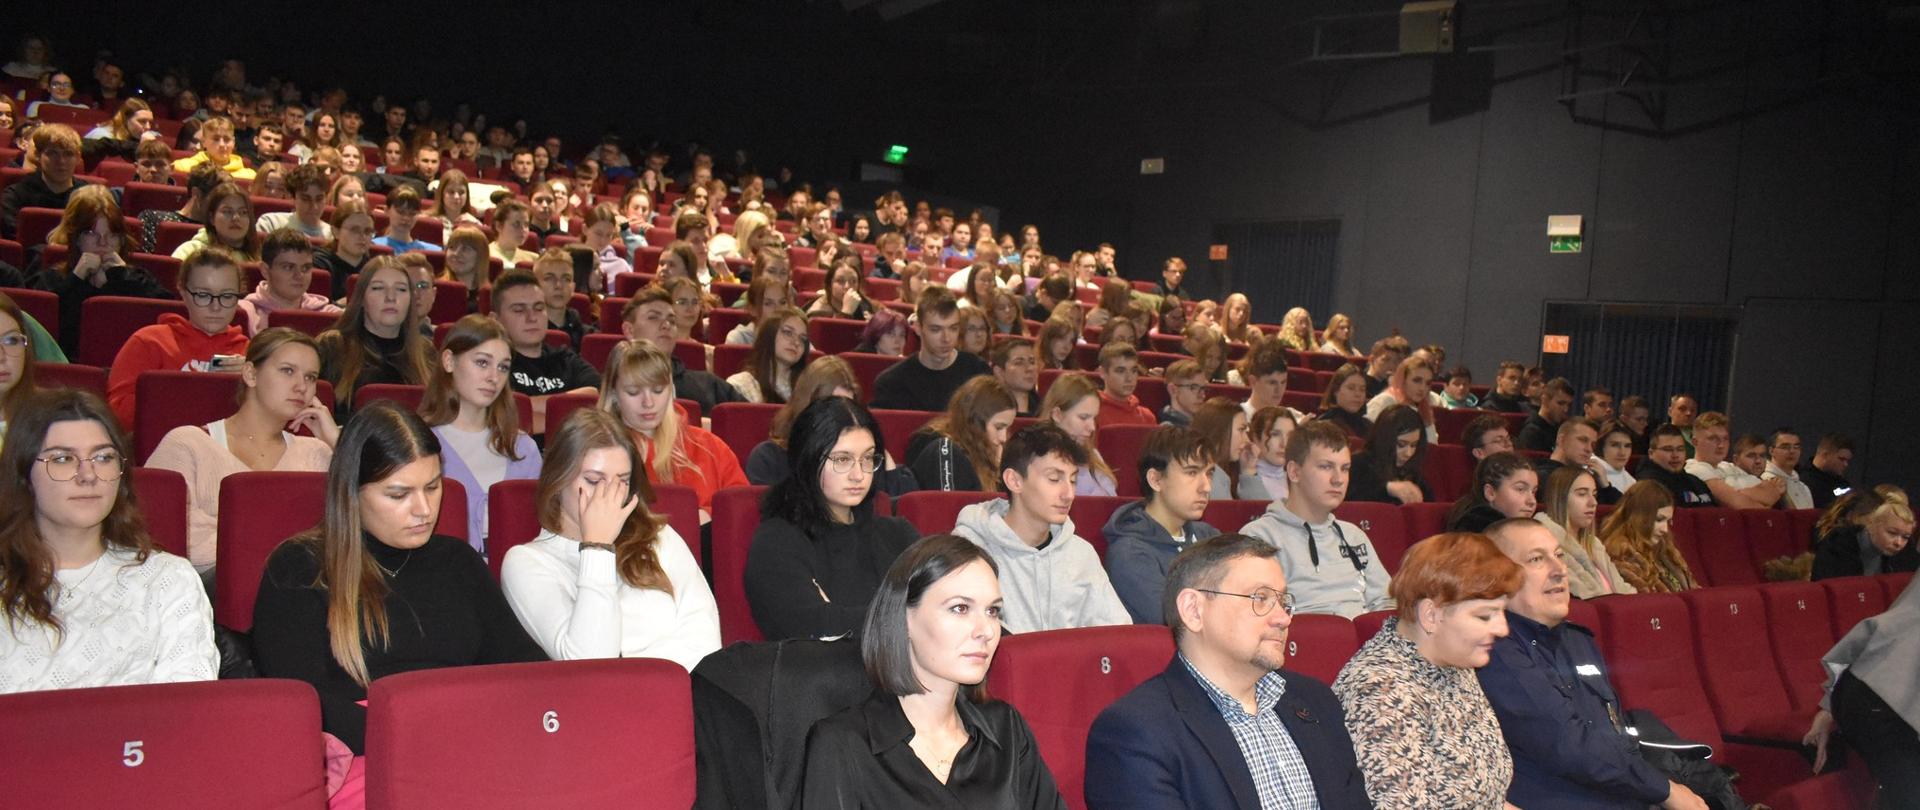 W krotoszyńskim kinie zasiada młodzież, uczestnicząca w konferencji. Widocznie rzędy wypełnione po brzegi słuchaczami. Na scenie trwa prelekcja na temat zagrożeń skierowana dla uczestników ruchu drogowego.